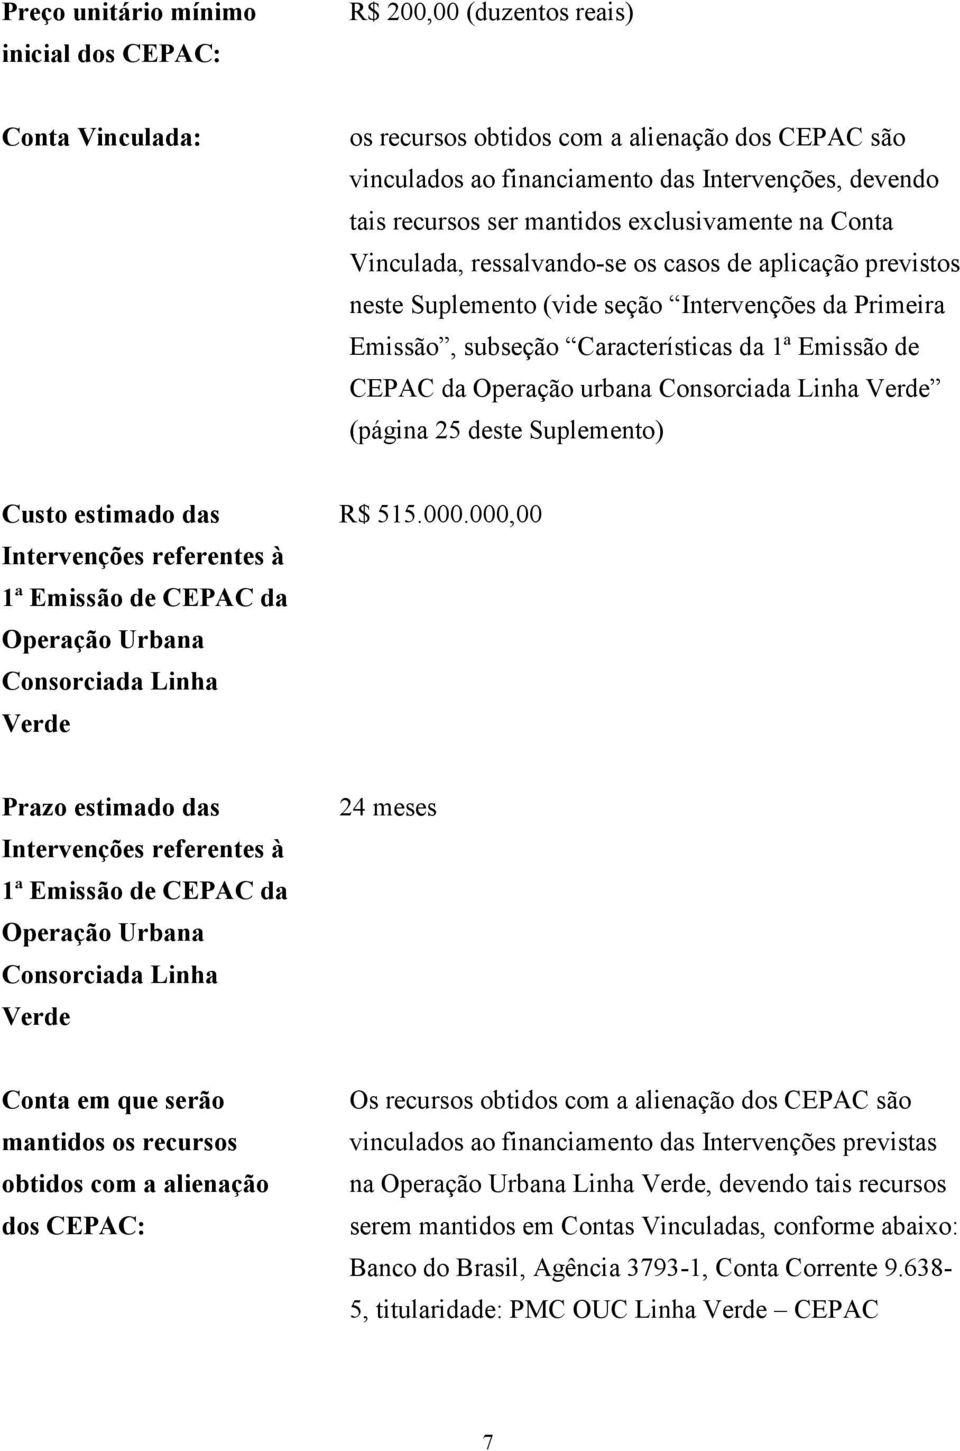 Emissão de CEPAC da Operação urbana Consorciada Linha Verde (página 25 deste Suplemento) Custo estimado das Intervenções referentes à 1ª Emissão de CEPAC da Operação Urbana Consorciada Linha Verde R$